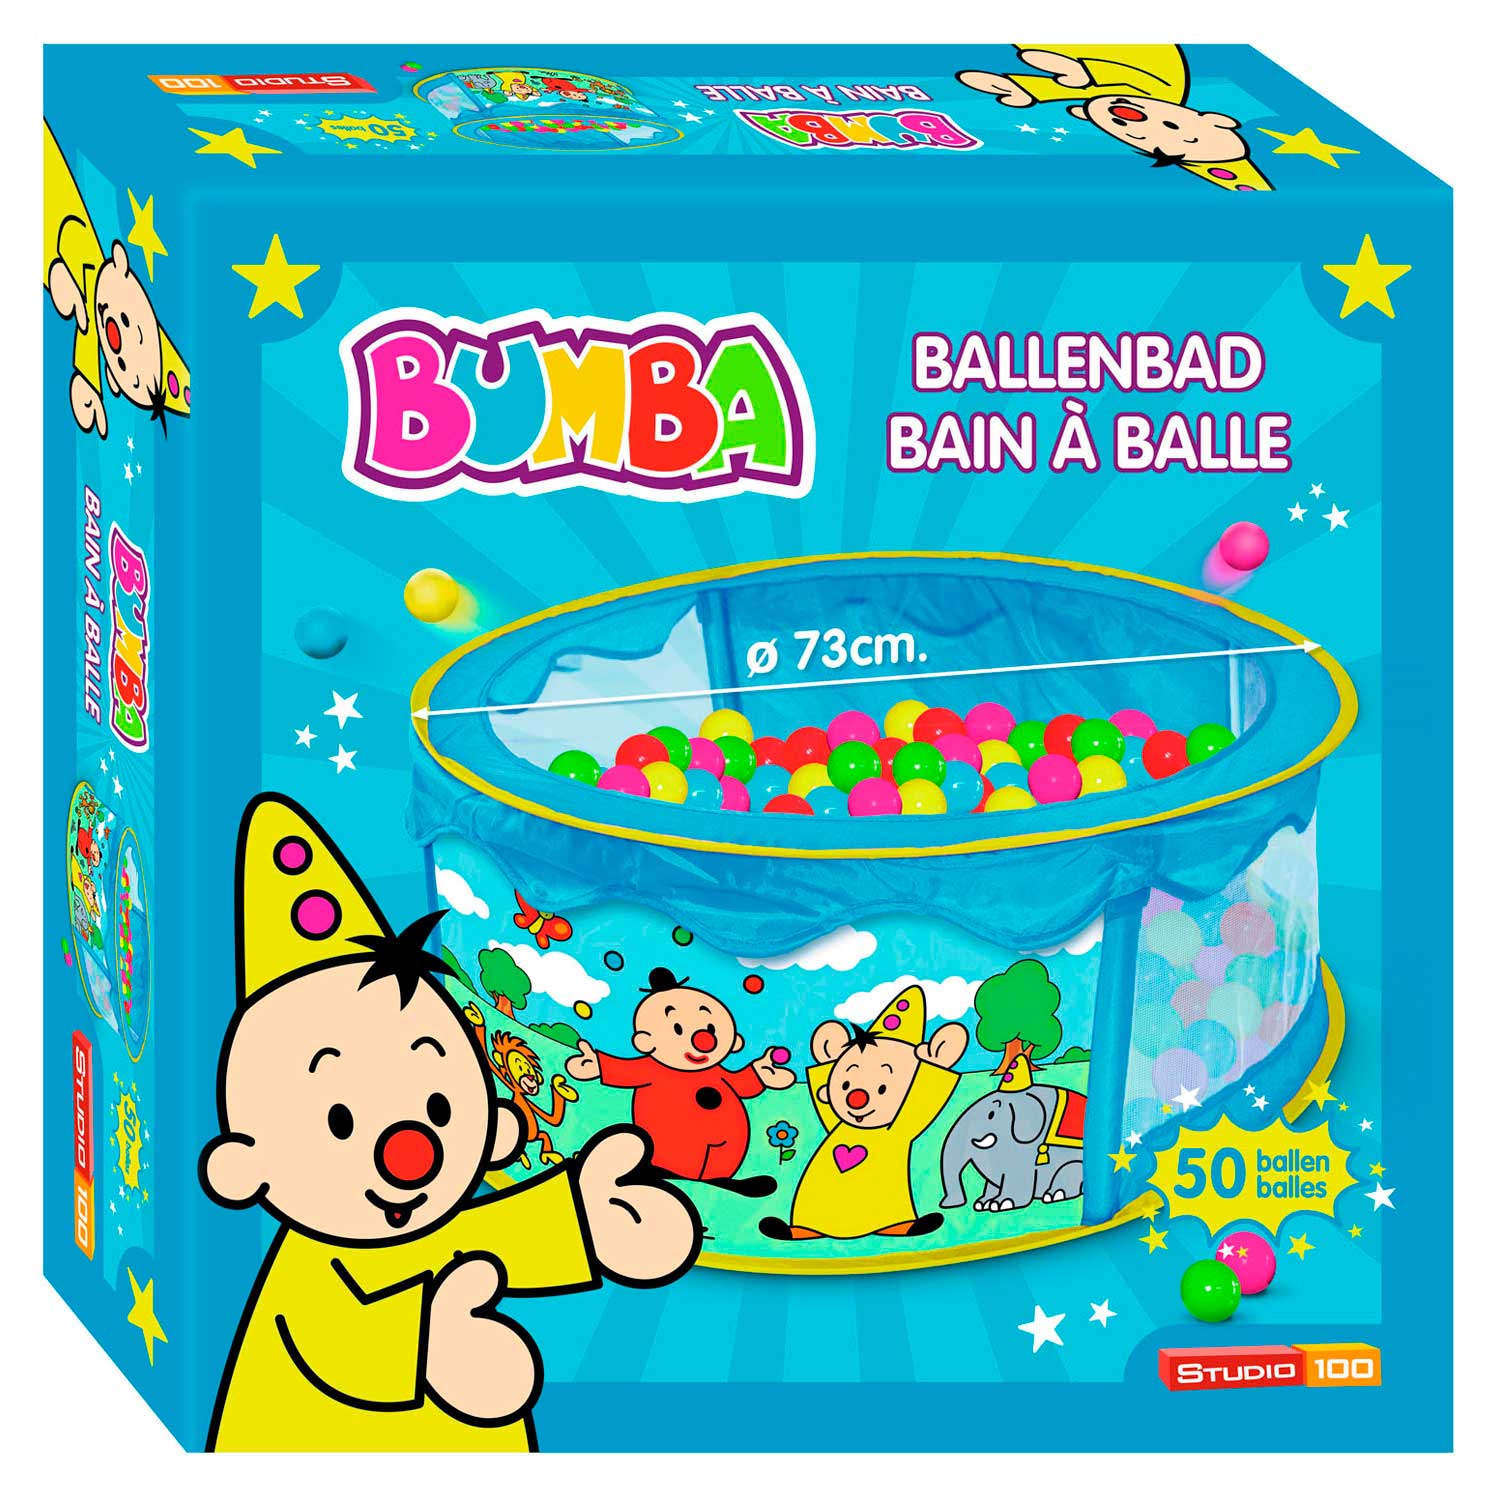 Bumba Ballenbad met 50 ballen